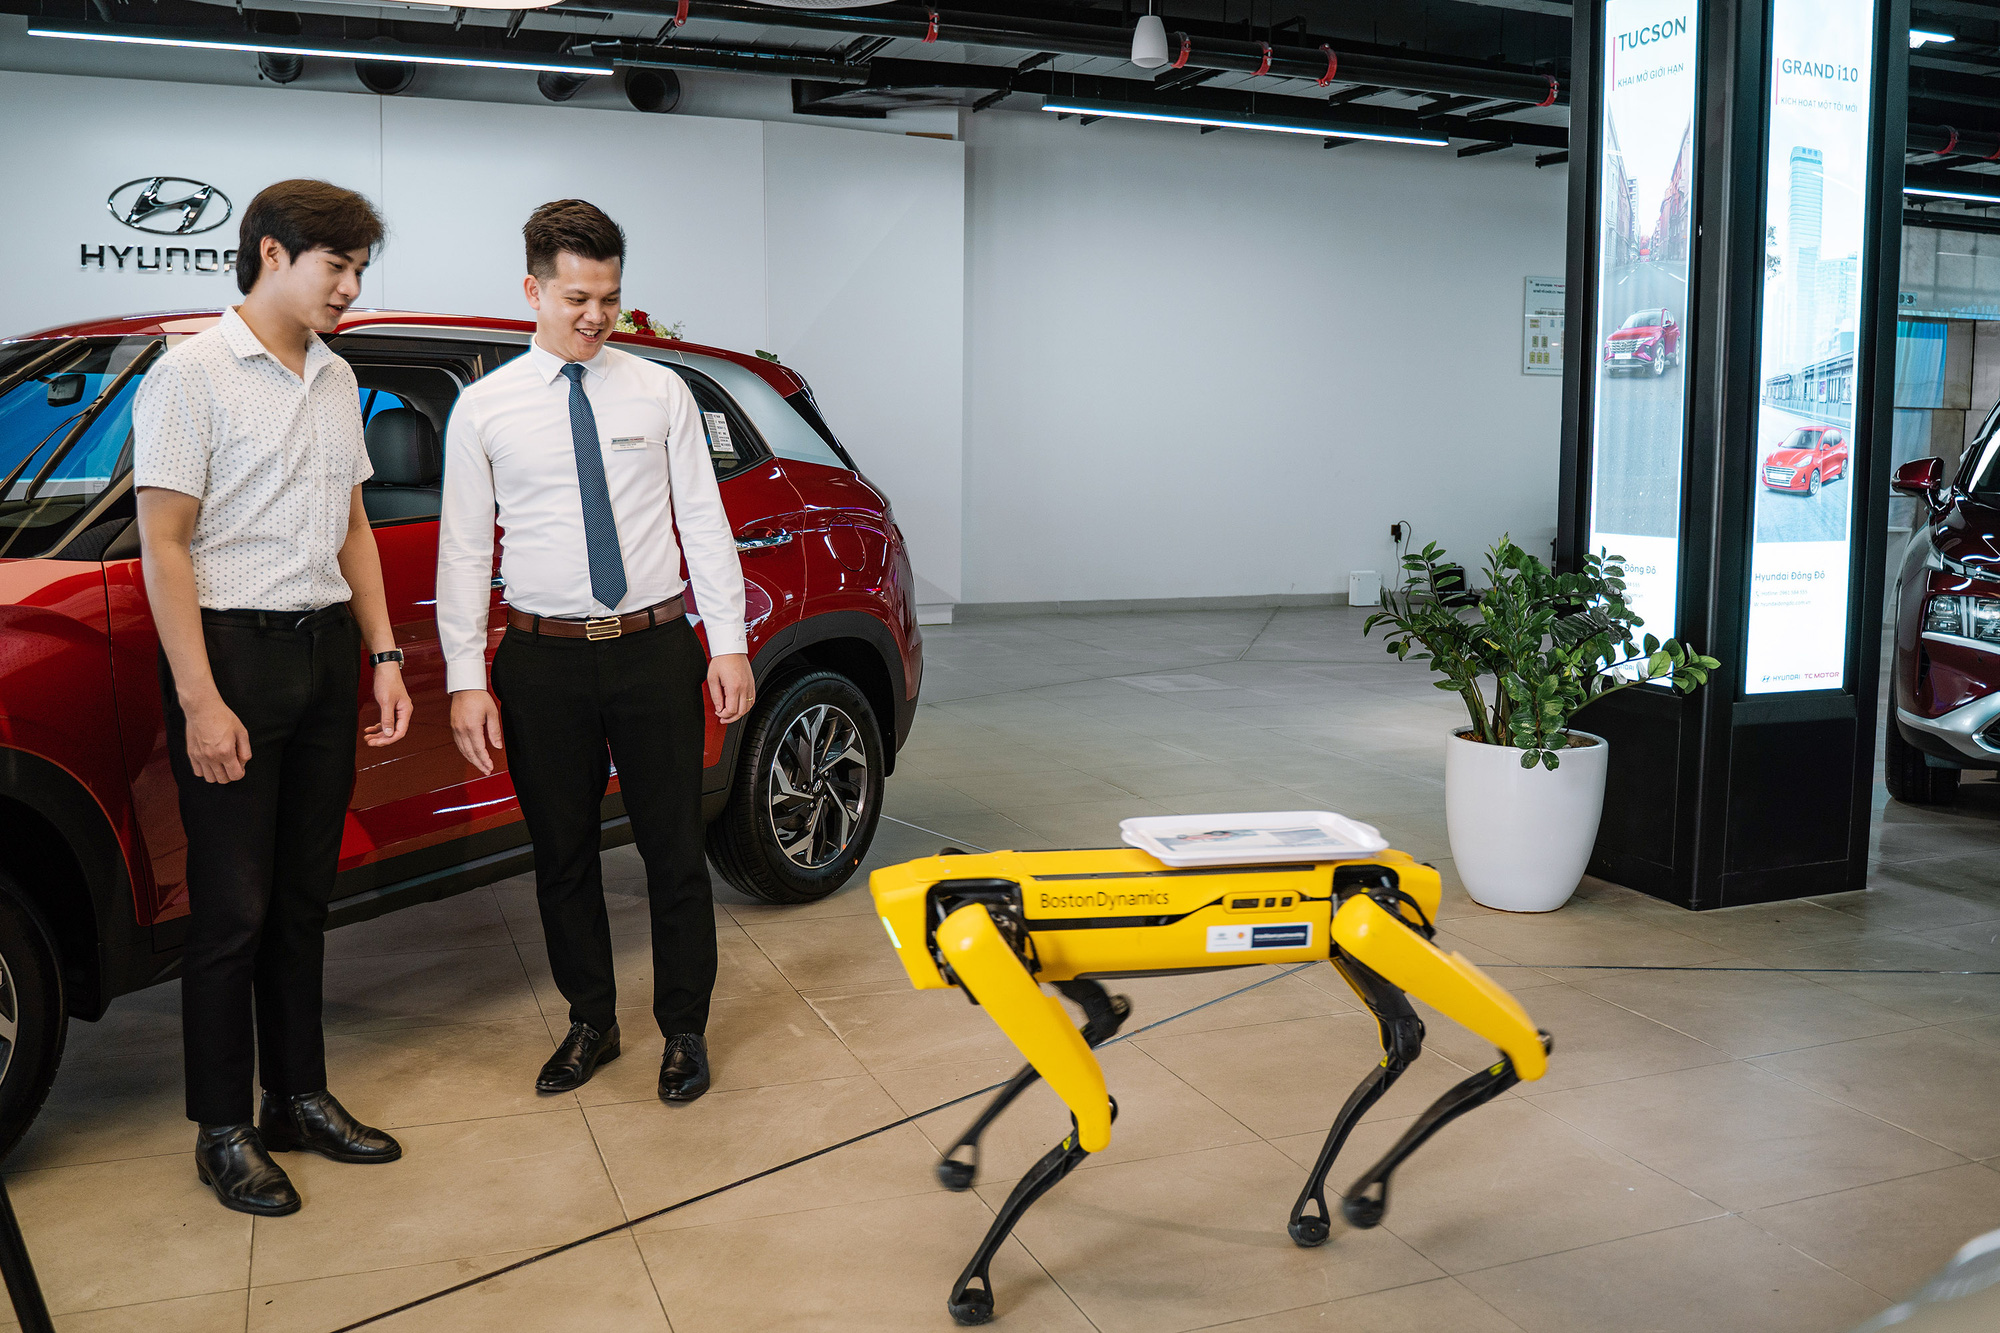 Hyundai trang robot Spot Boston Dynamic giúp nâng cao trải nghiệm khách hàng - Ảnh 2.